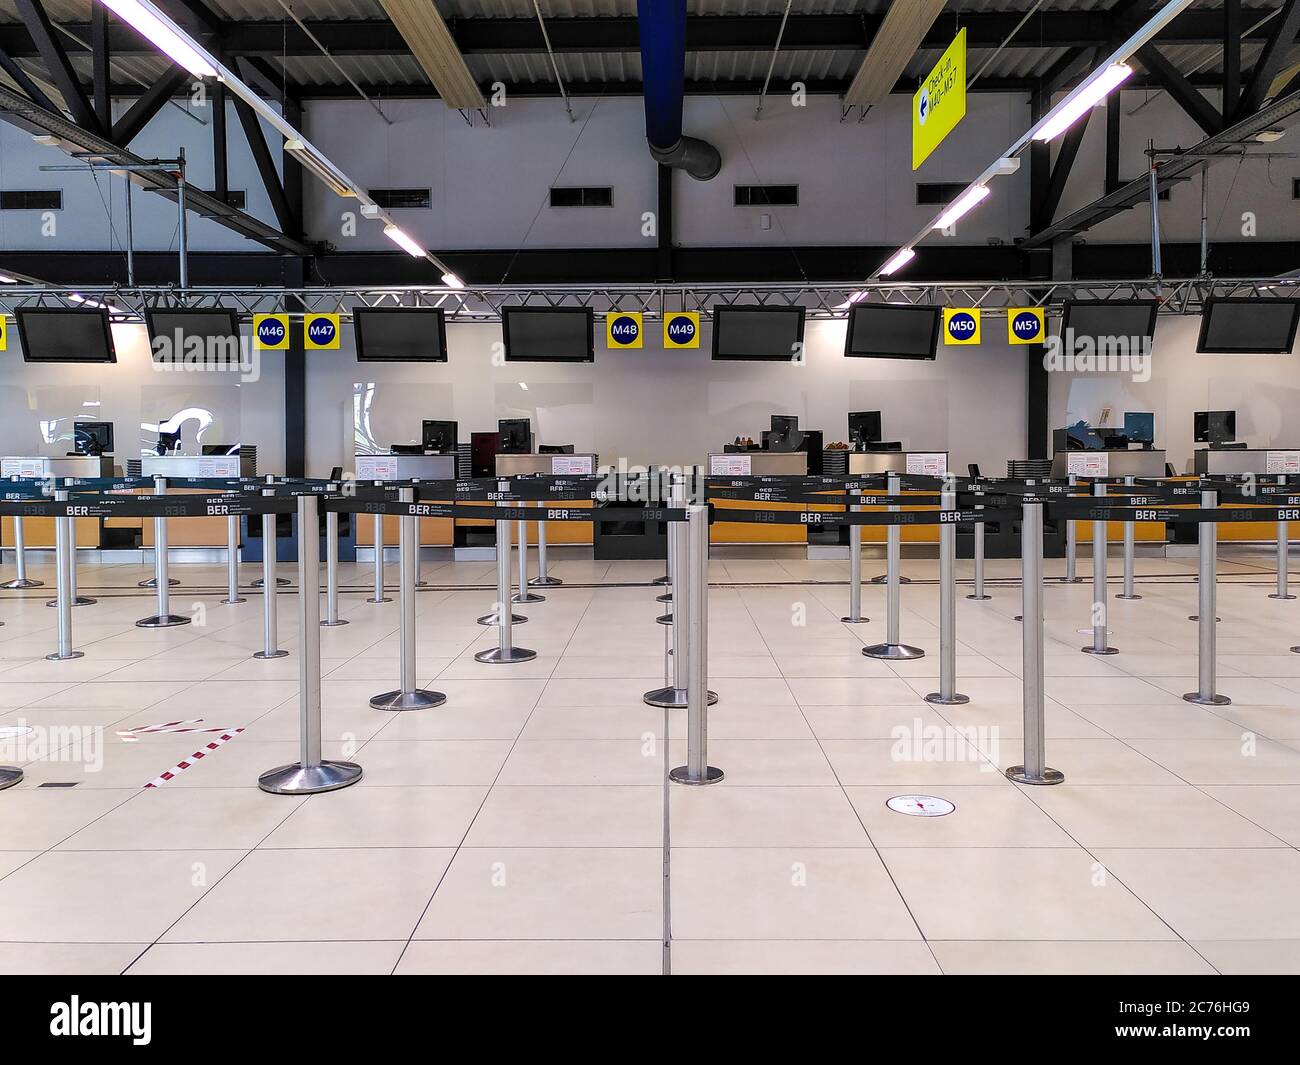 Banchi di check-in abbandonati all'aeroporto di Schönefeld (con nastro di barriera per l'aeroporto BER) a causa del basso volume di passeggeri durante la crisi del coronavirus in Germania. Foto Stock